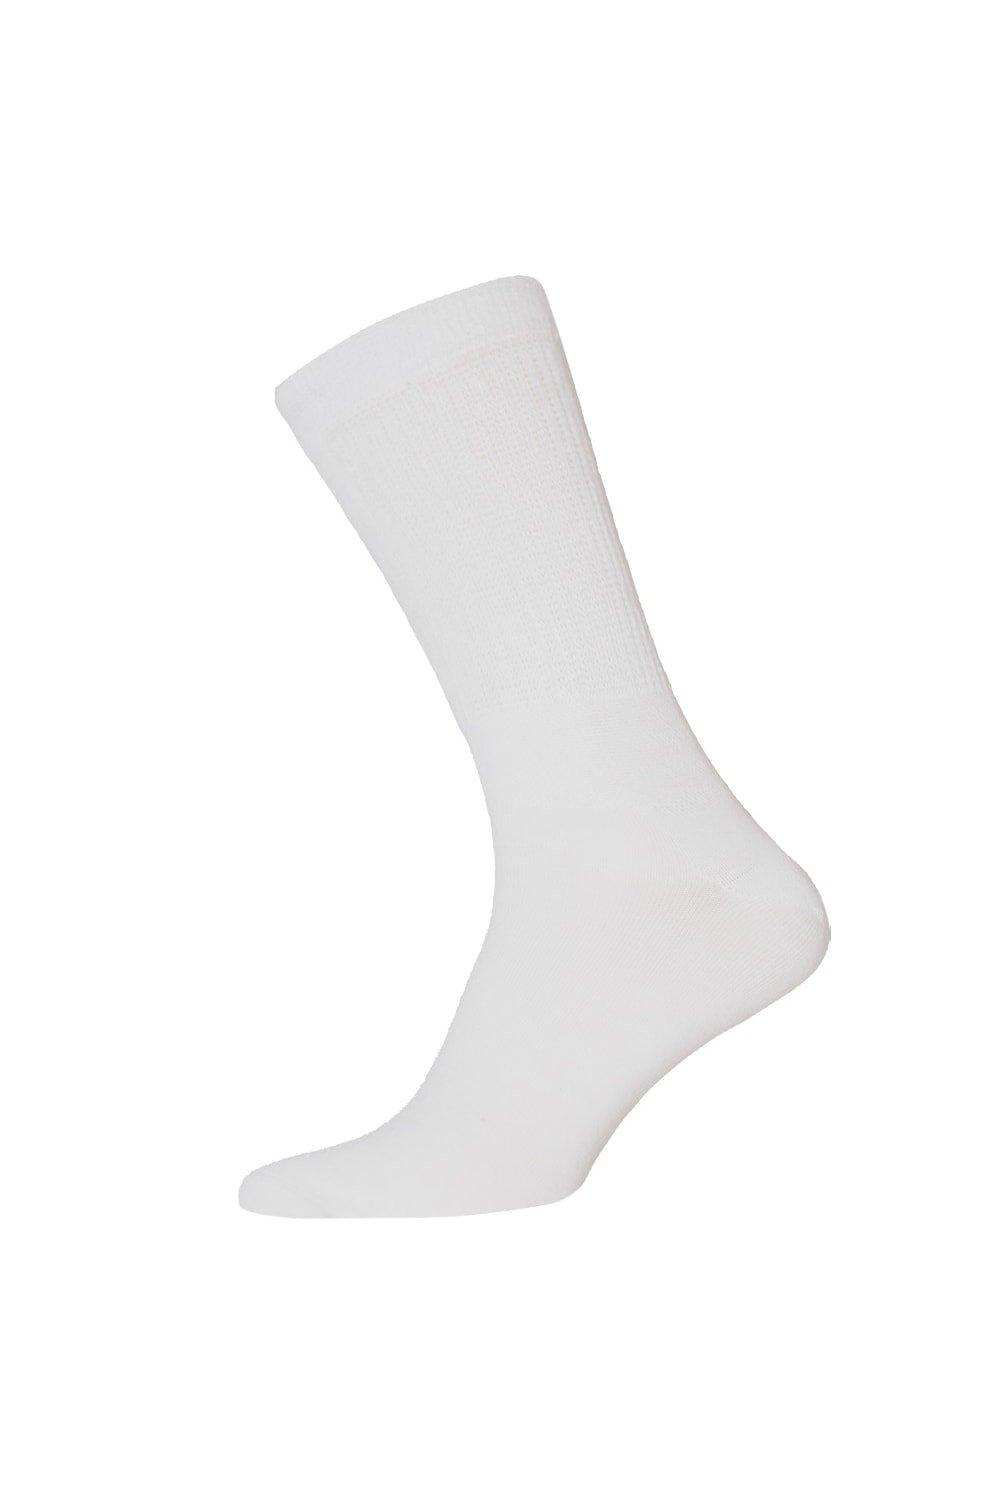 Big Foot Comfort Fit Diabetic Socks (3 Pairs)